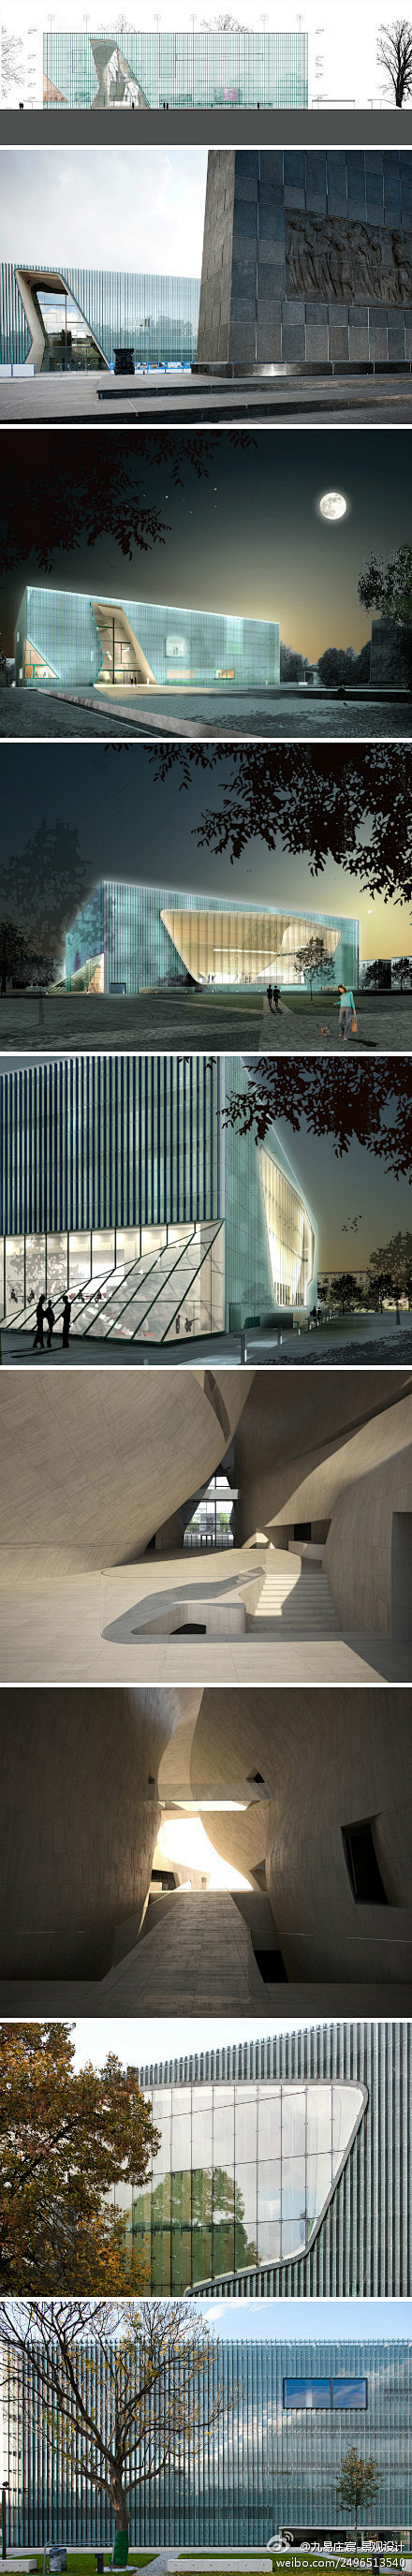 时光影墙丨波兰犹太历史博物馆建筑设计